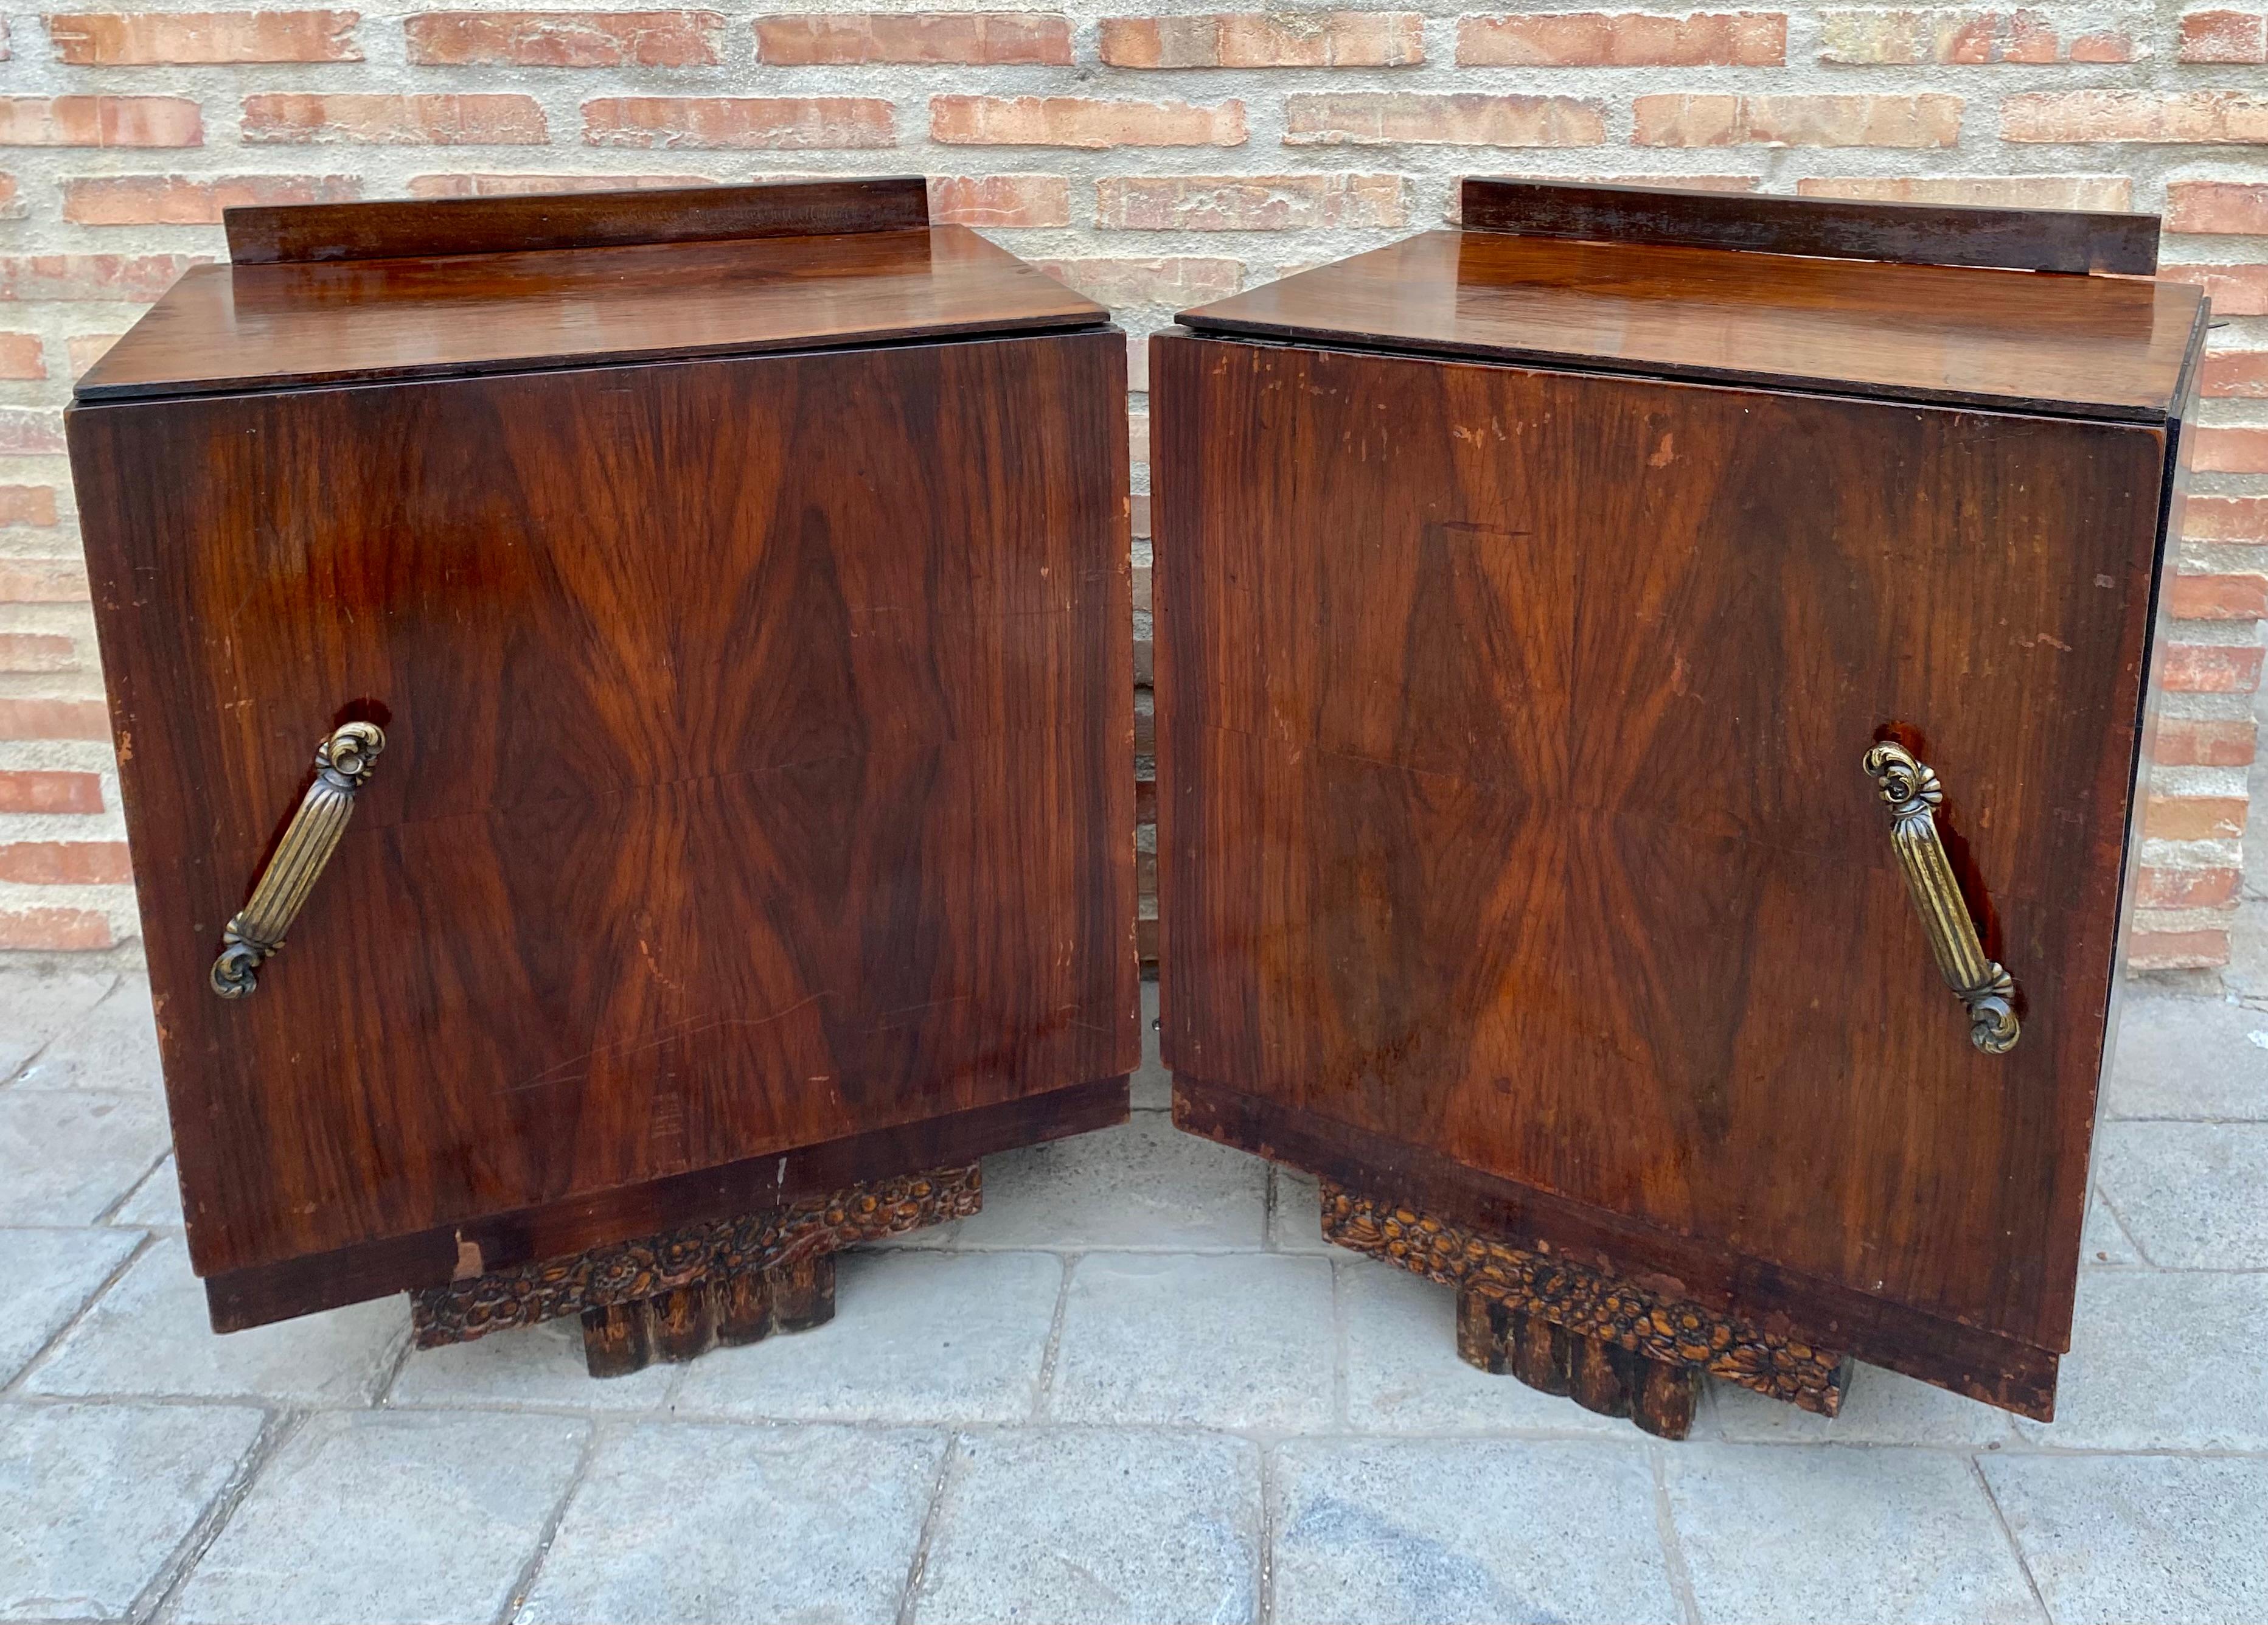 Magnifique paire de tables de chevet Art déco françaises des années 1930 en bois de noyer, à utiliser comme tables de chevet dans nos chambres à coucher. Chacune d'entre elles possède un compartiment de rangement avec une porte à charnières et une